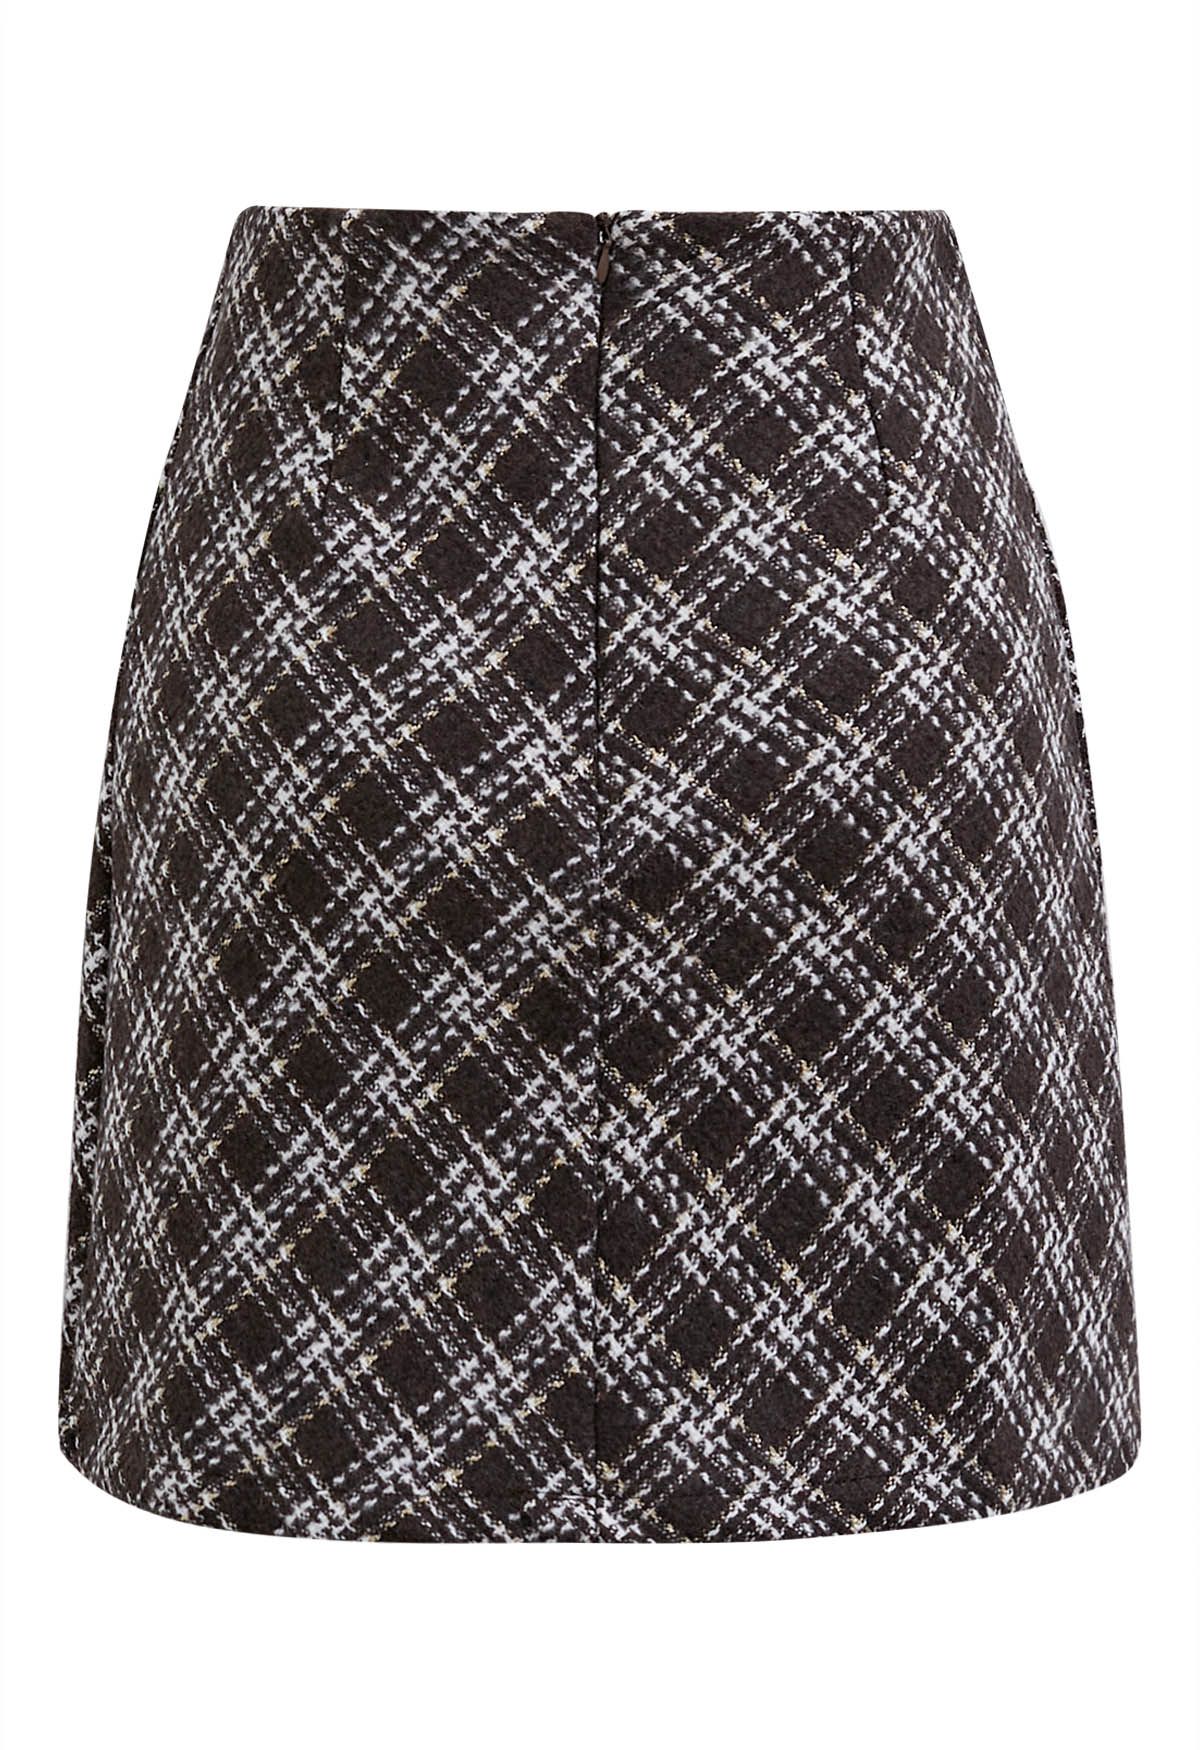 Plaid Pattern Tweed Mini Bud Skirt in Brown